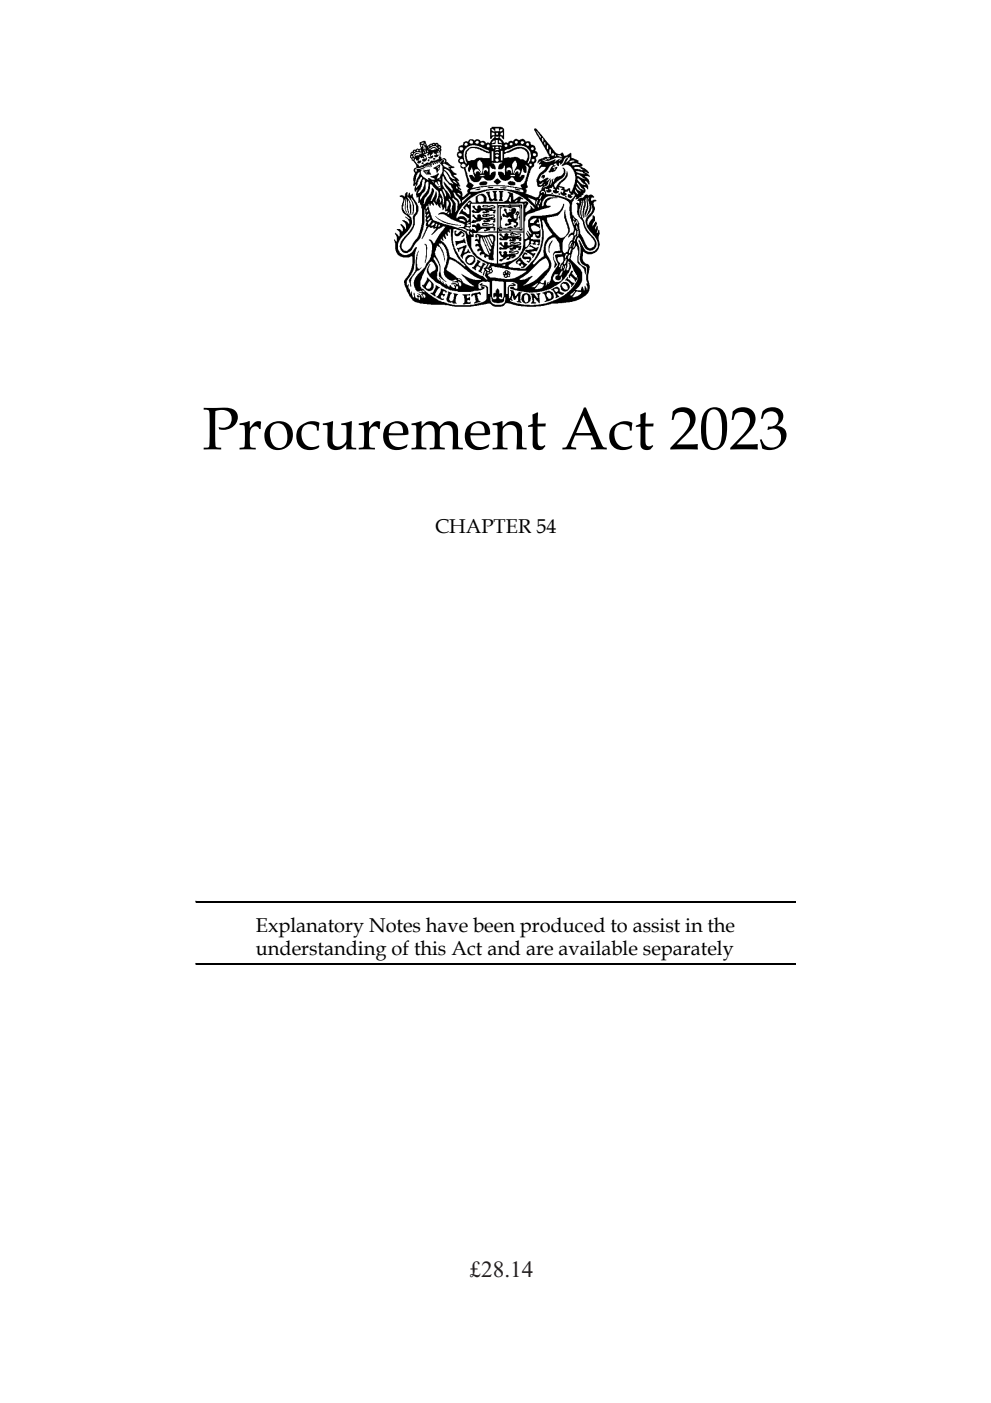 Procurement Act 2023 Chapter 54